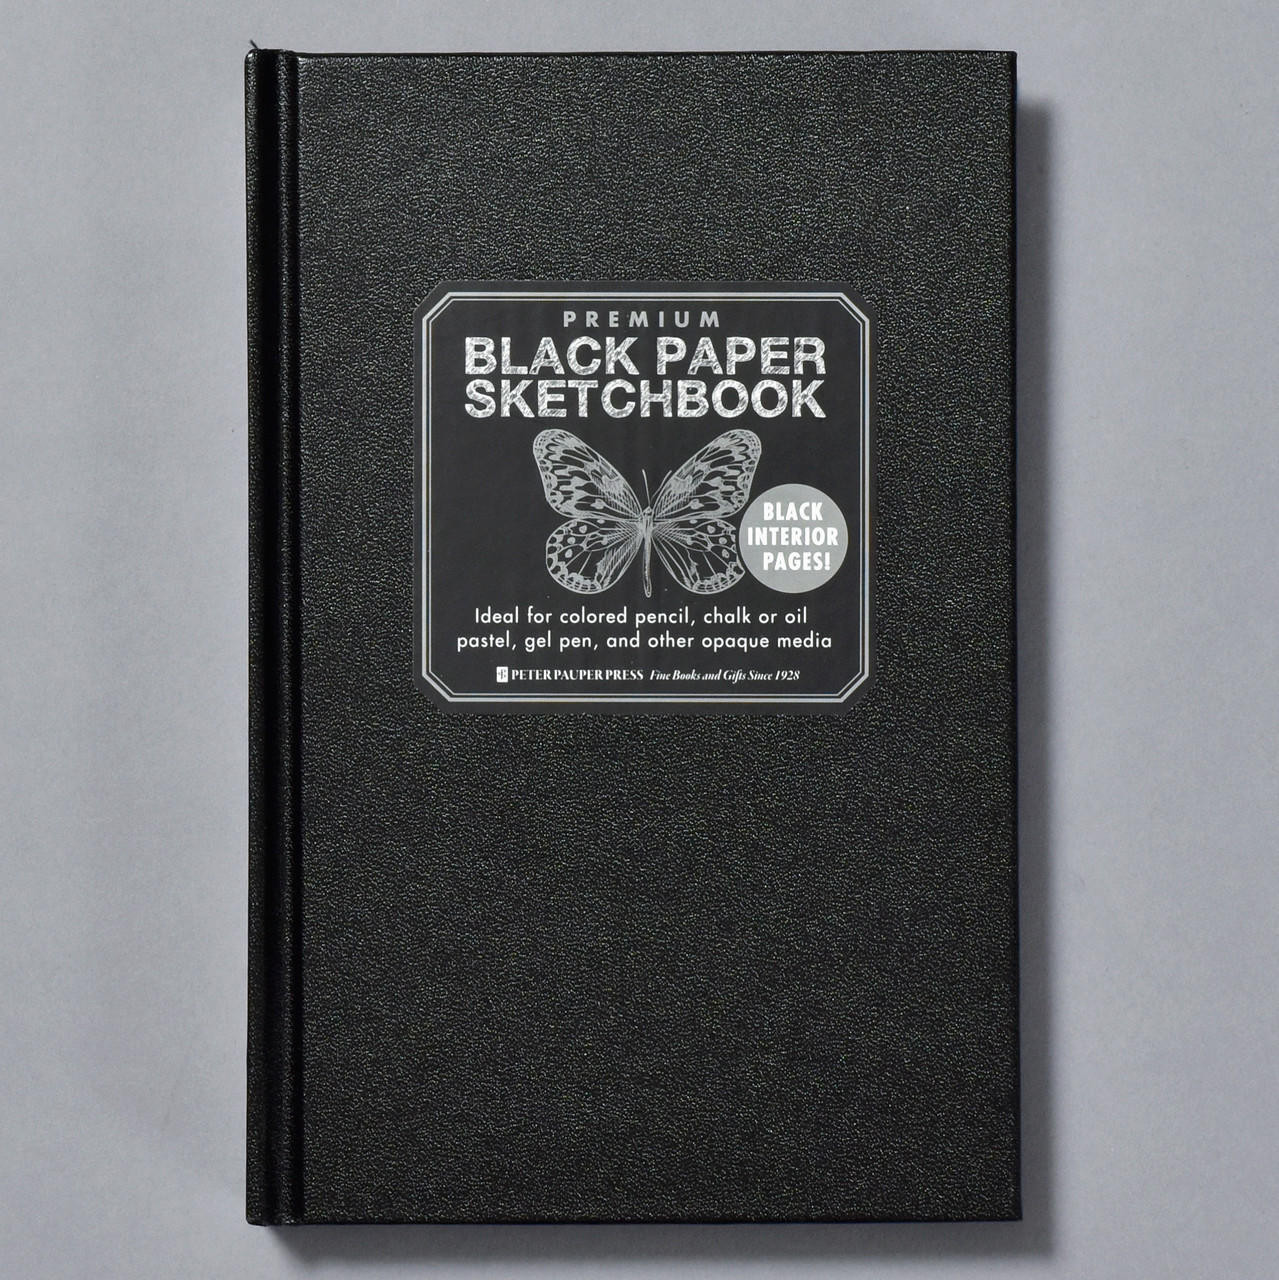 SKETCHBOOK BLACK PAPER (SILVER EDITION)